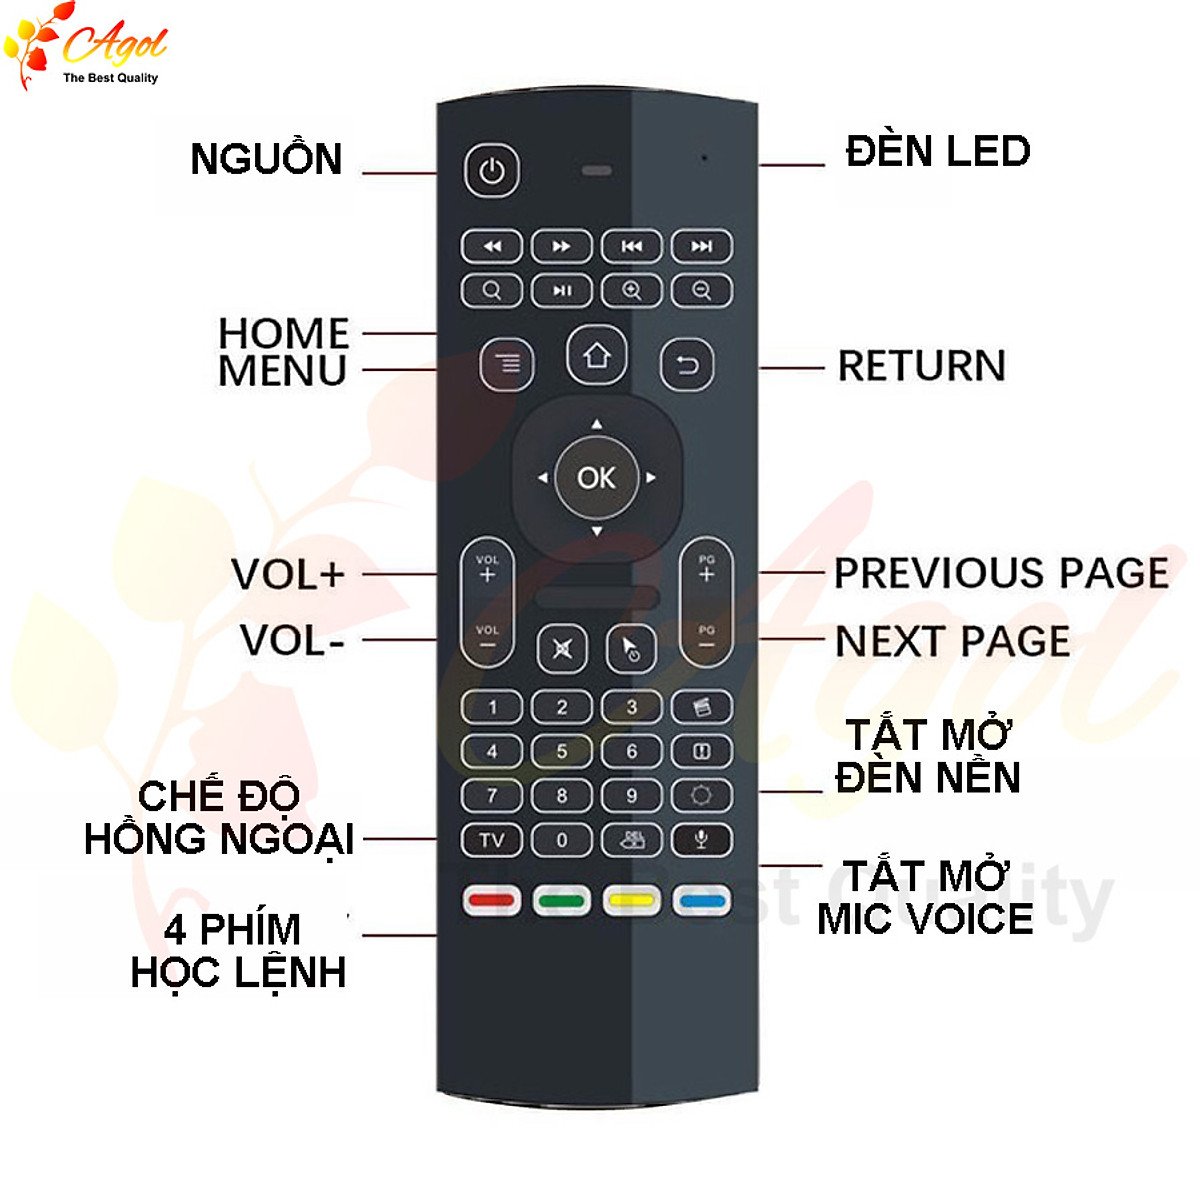 Magicsee N5 Pro Ram 4G điều khiển giọng nói tiếng Việt kiêm bàn phím chuột bay có đèn nền wifi 2 băng tần bluetooth cài sẵn phim, truyền hình cáp miễn phí vĩnh viễn - Hàng Nhập Khẩu